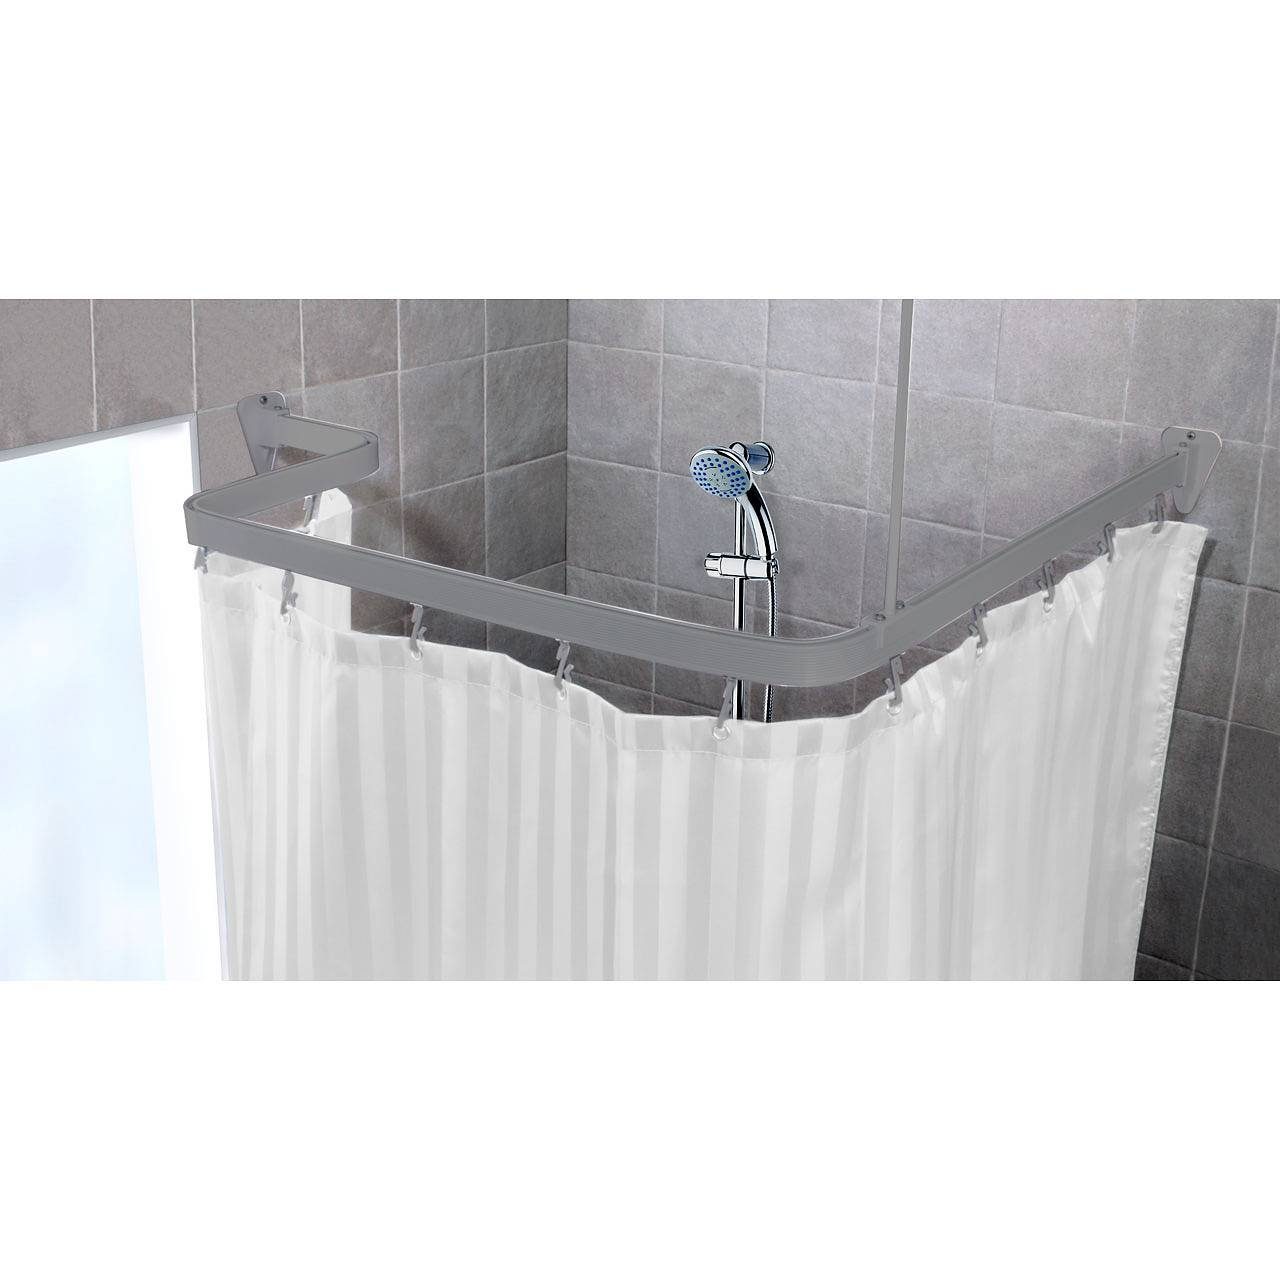 Duschvorhangstange Duschvorhangstange Flexibel 3 x 1 Meter biegsam bis 3  Meter kann von Hand gebogen 3 Farben, Euroshowers GmbH